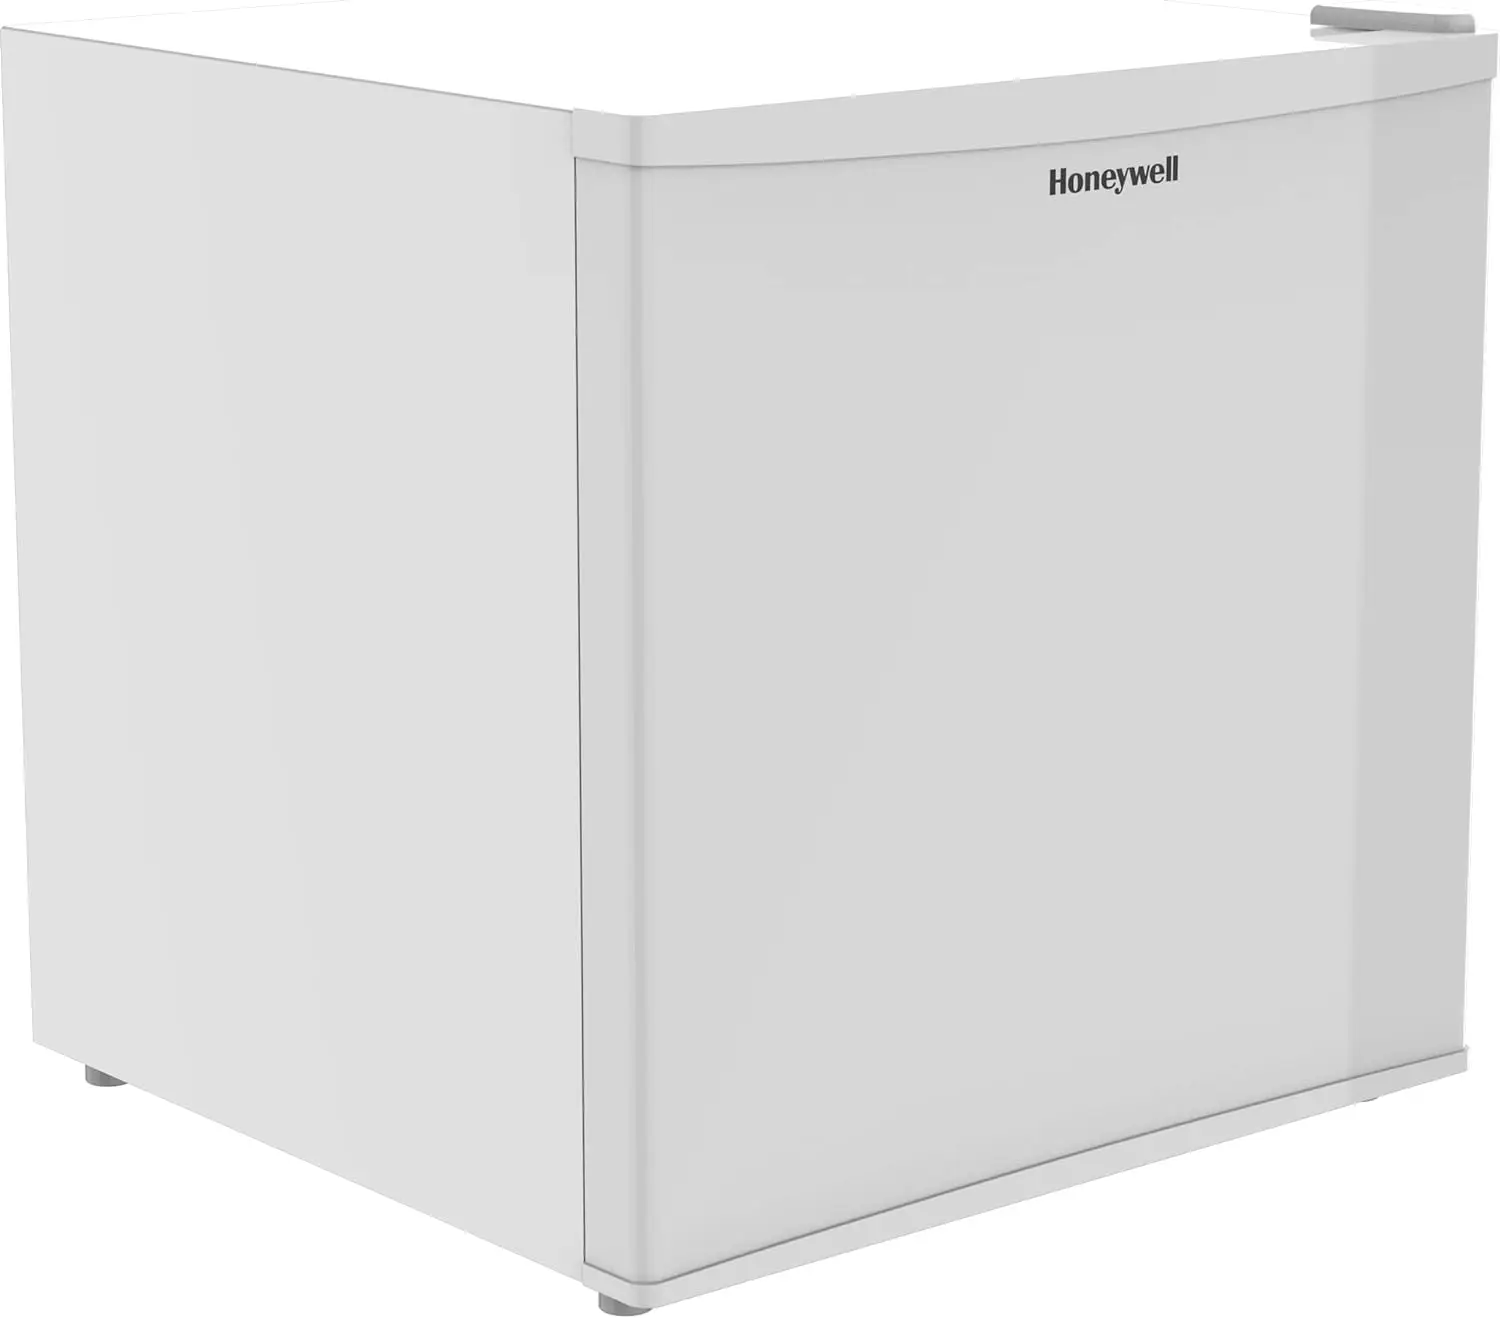 

Honeywell Mini Compact Freezer Countertop, 1.1 Cubic Feet, Single Door Upright Freezer with Reversible Door, Removable Shelves